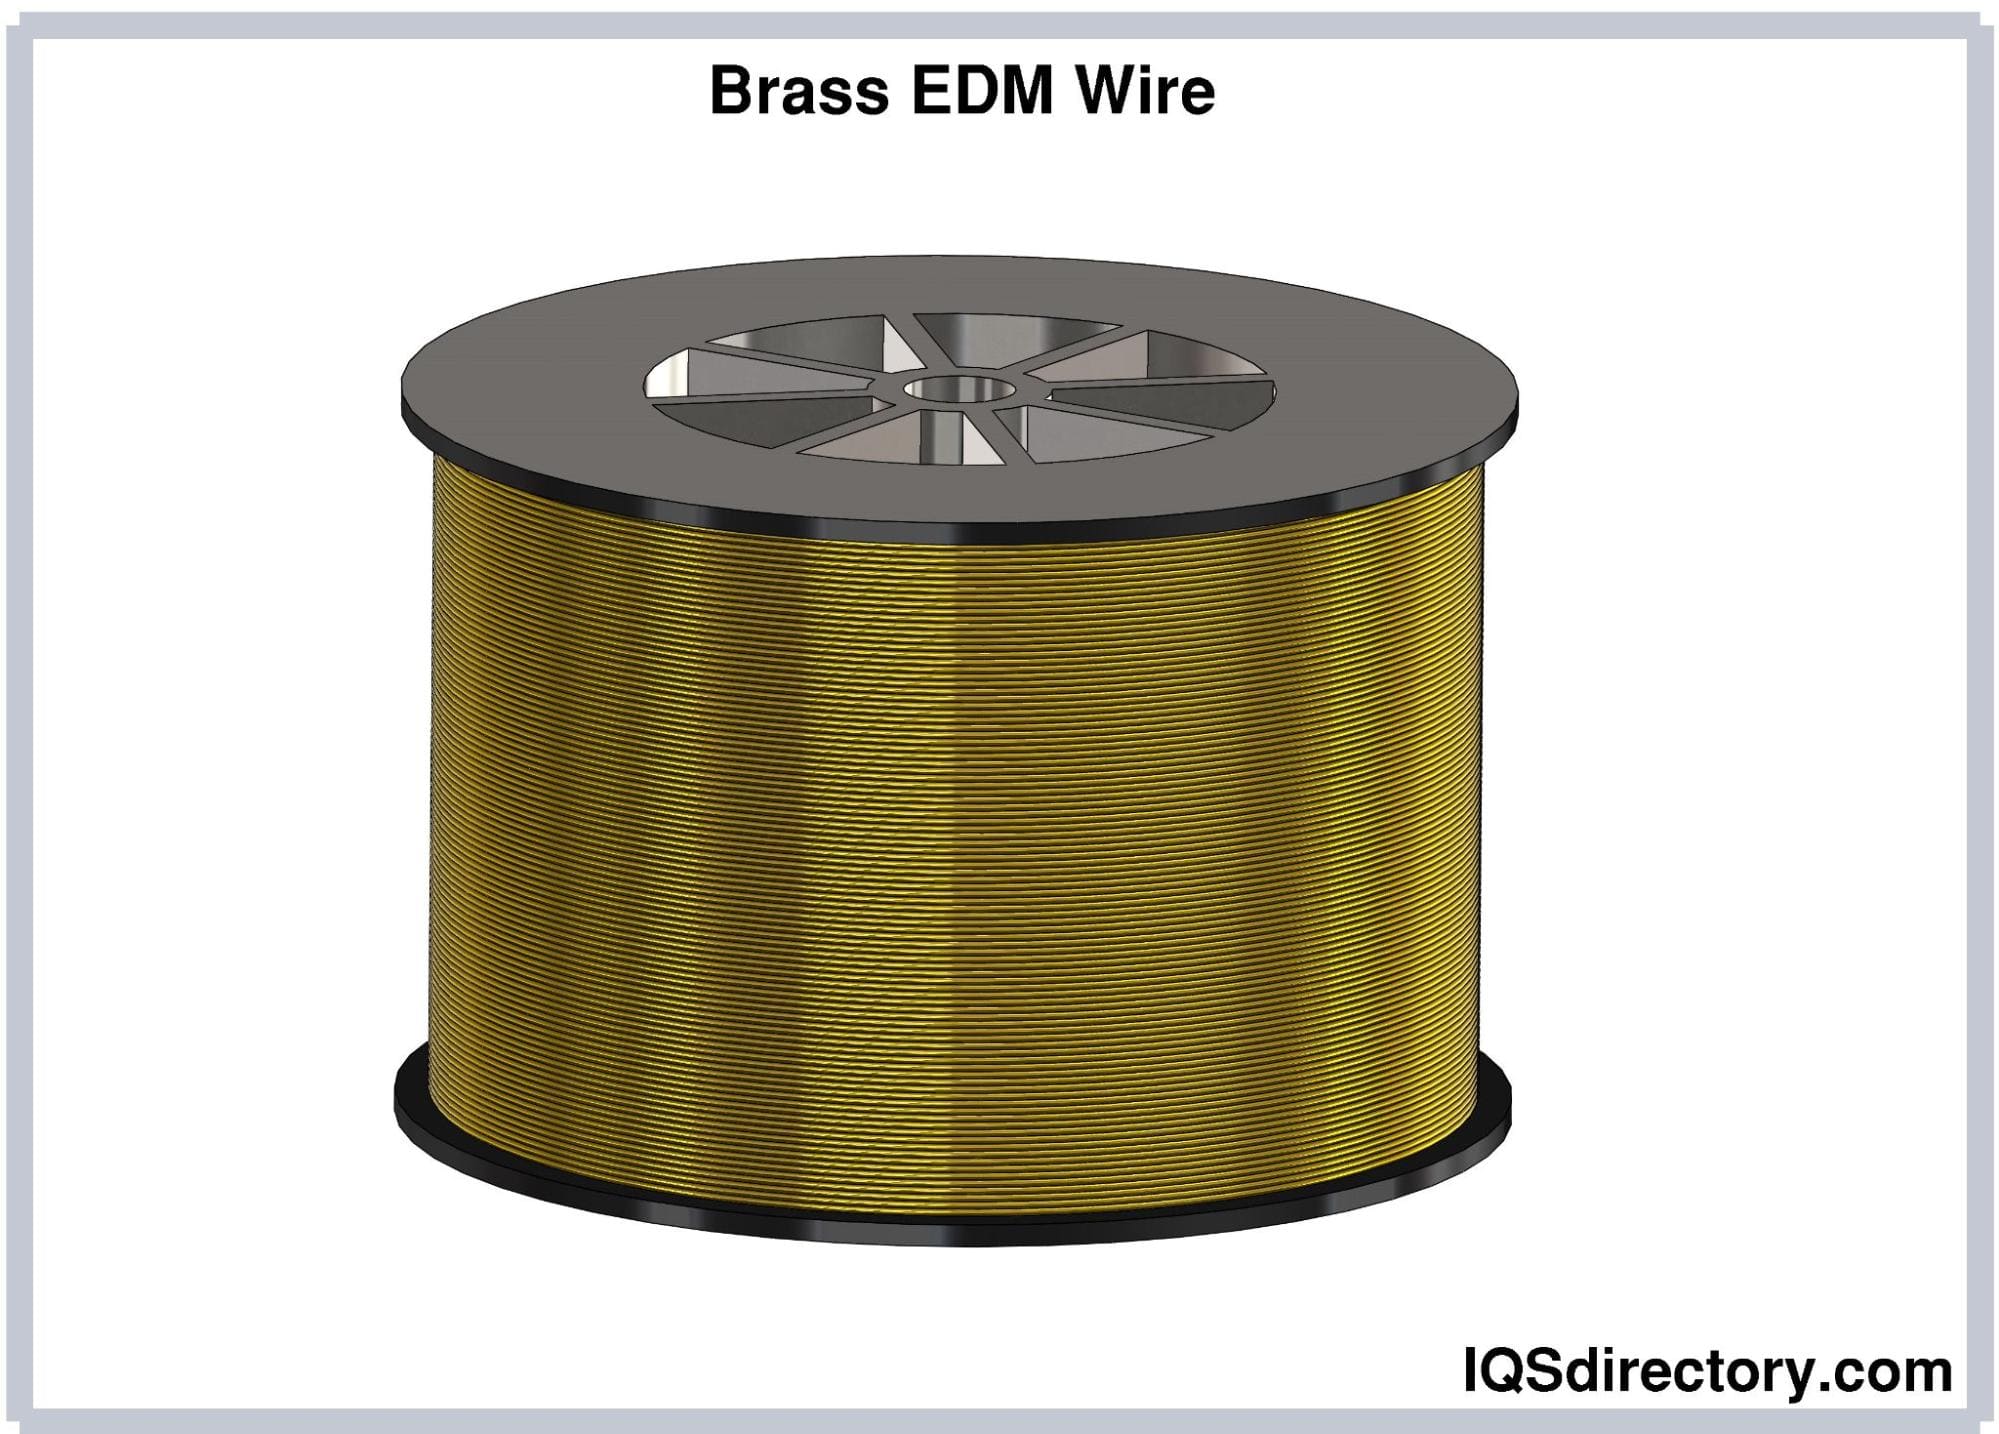 Brass EDM wires